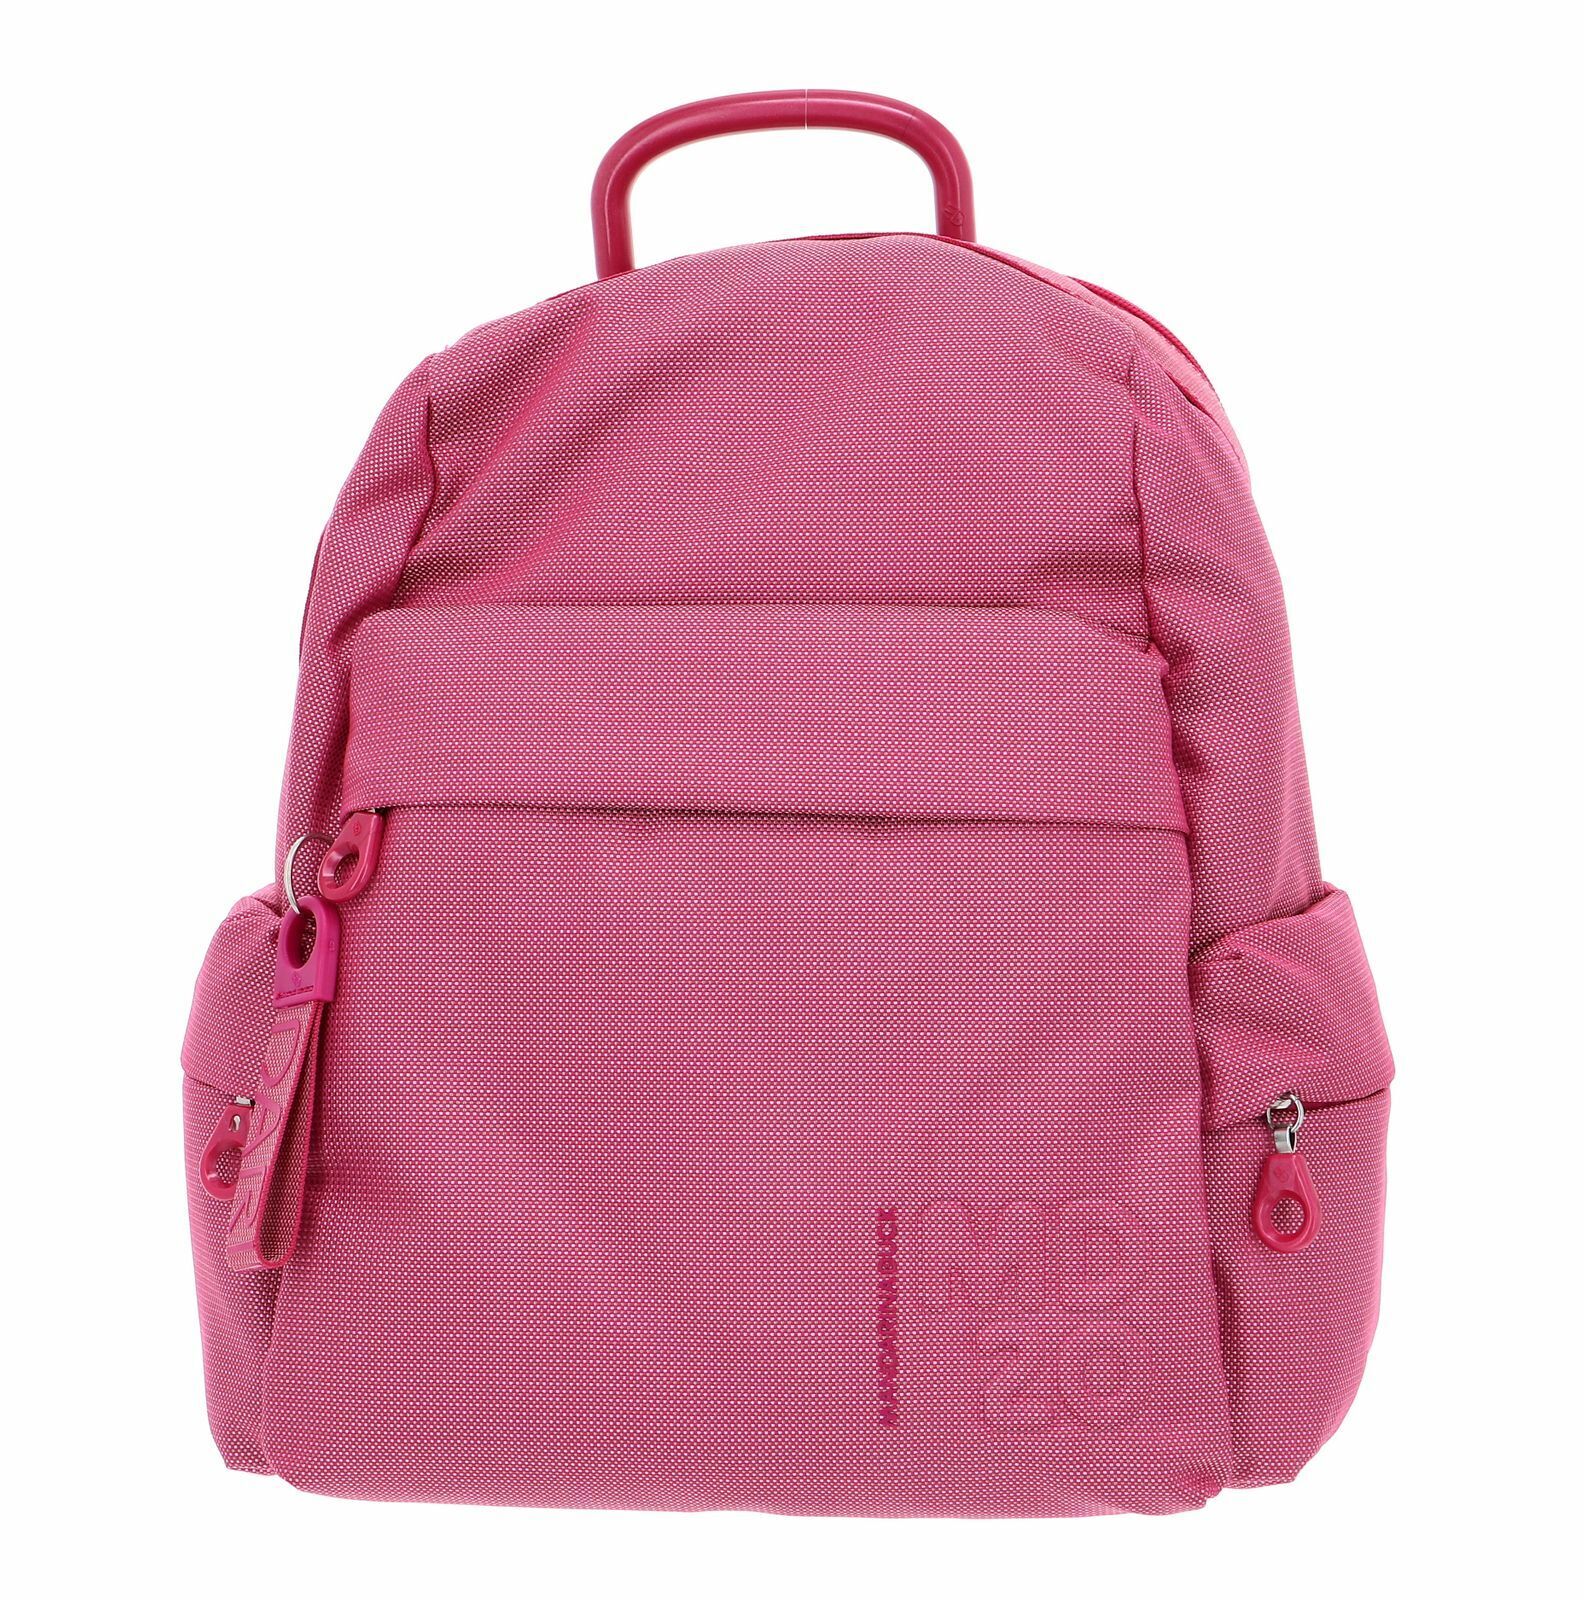 MANDARINA DUCK MD20 Backpack Rucksack Tasche Hot Pink Pink Neu VERKOOP, Nieuw